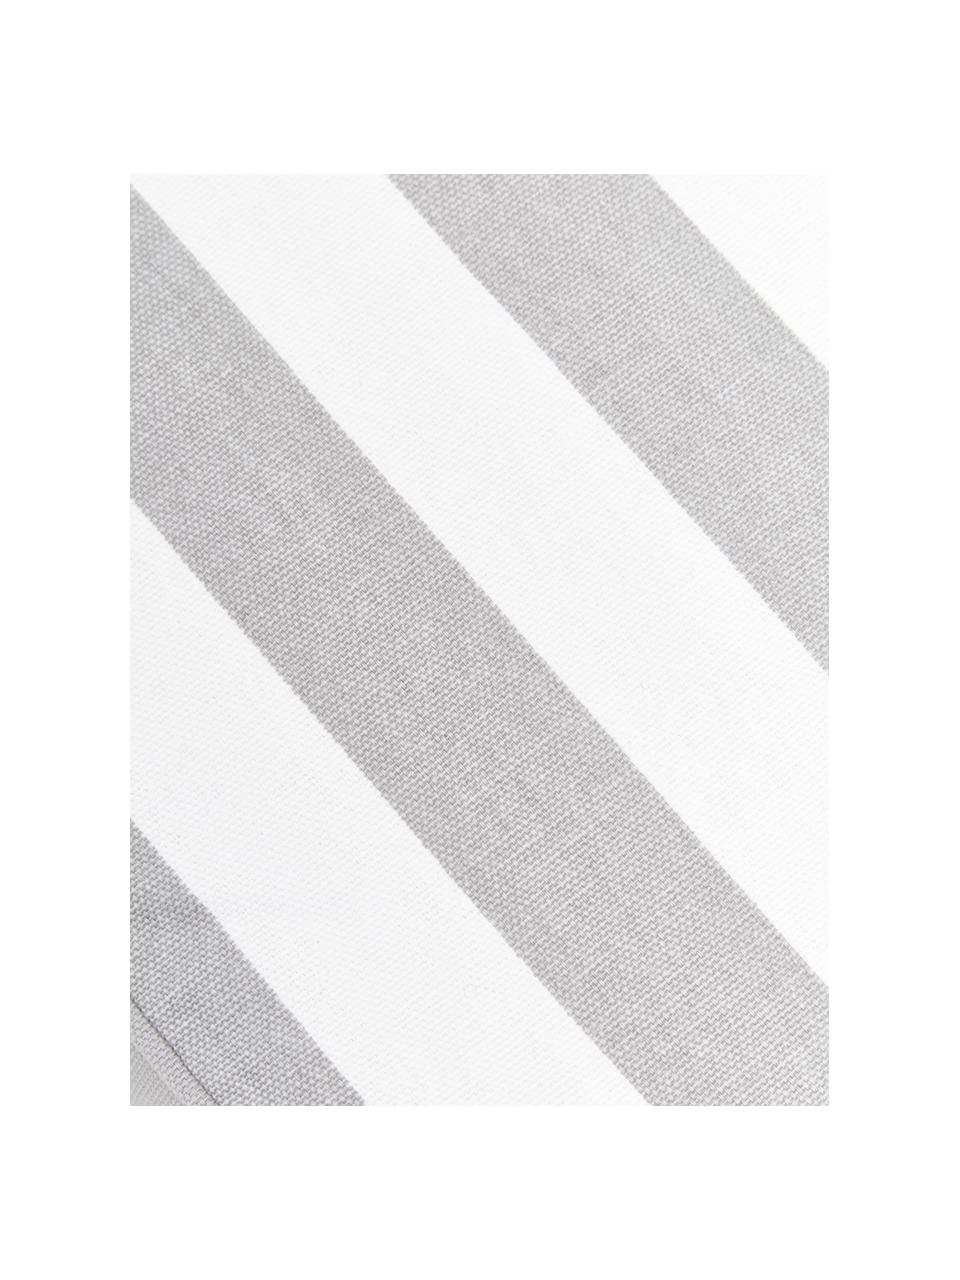 Coussin de chaise rayures grises Timon, Gris, blanc, larg. 40 x long. 40 cm